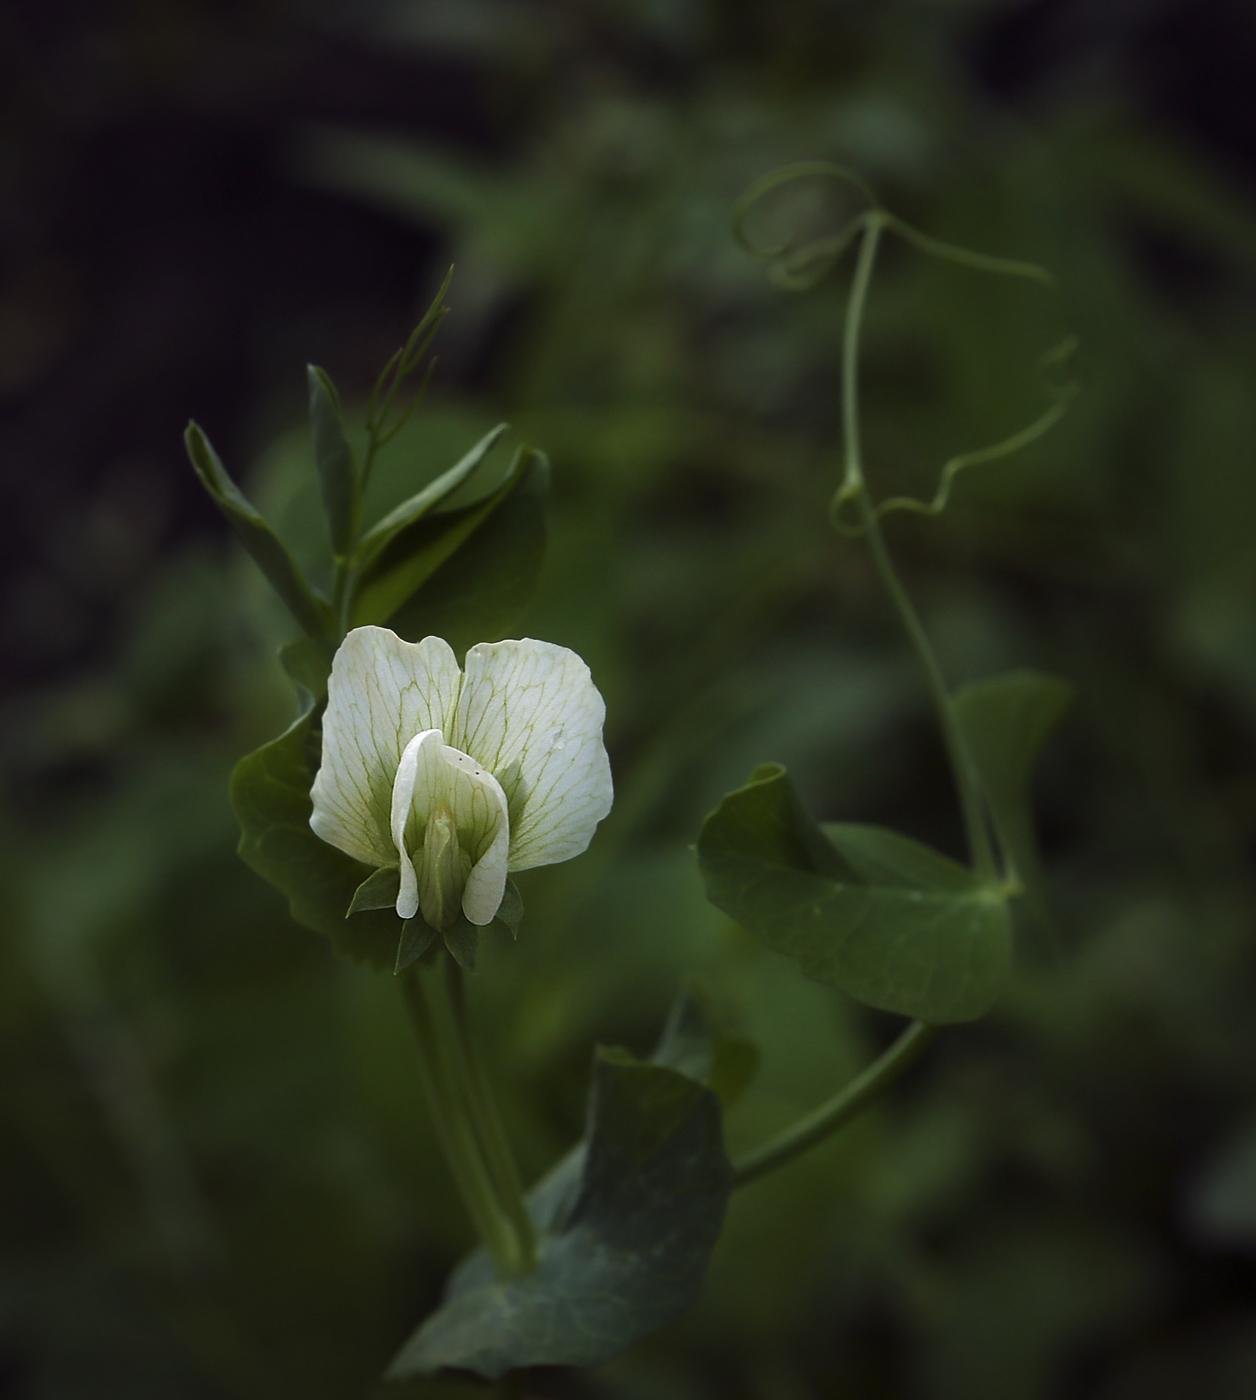 Цветок гороха посевного. Pisum sativum - горох посевной. Цветение гороха посевного. Pisum ensifolium. Горох посевной гербарий.